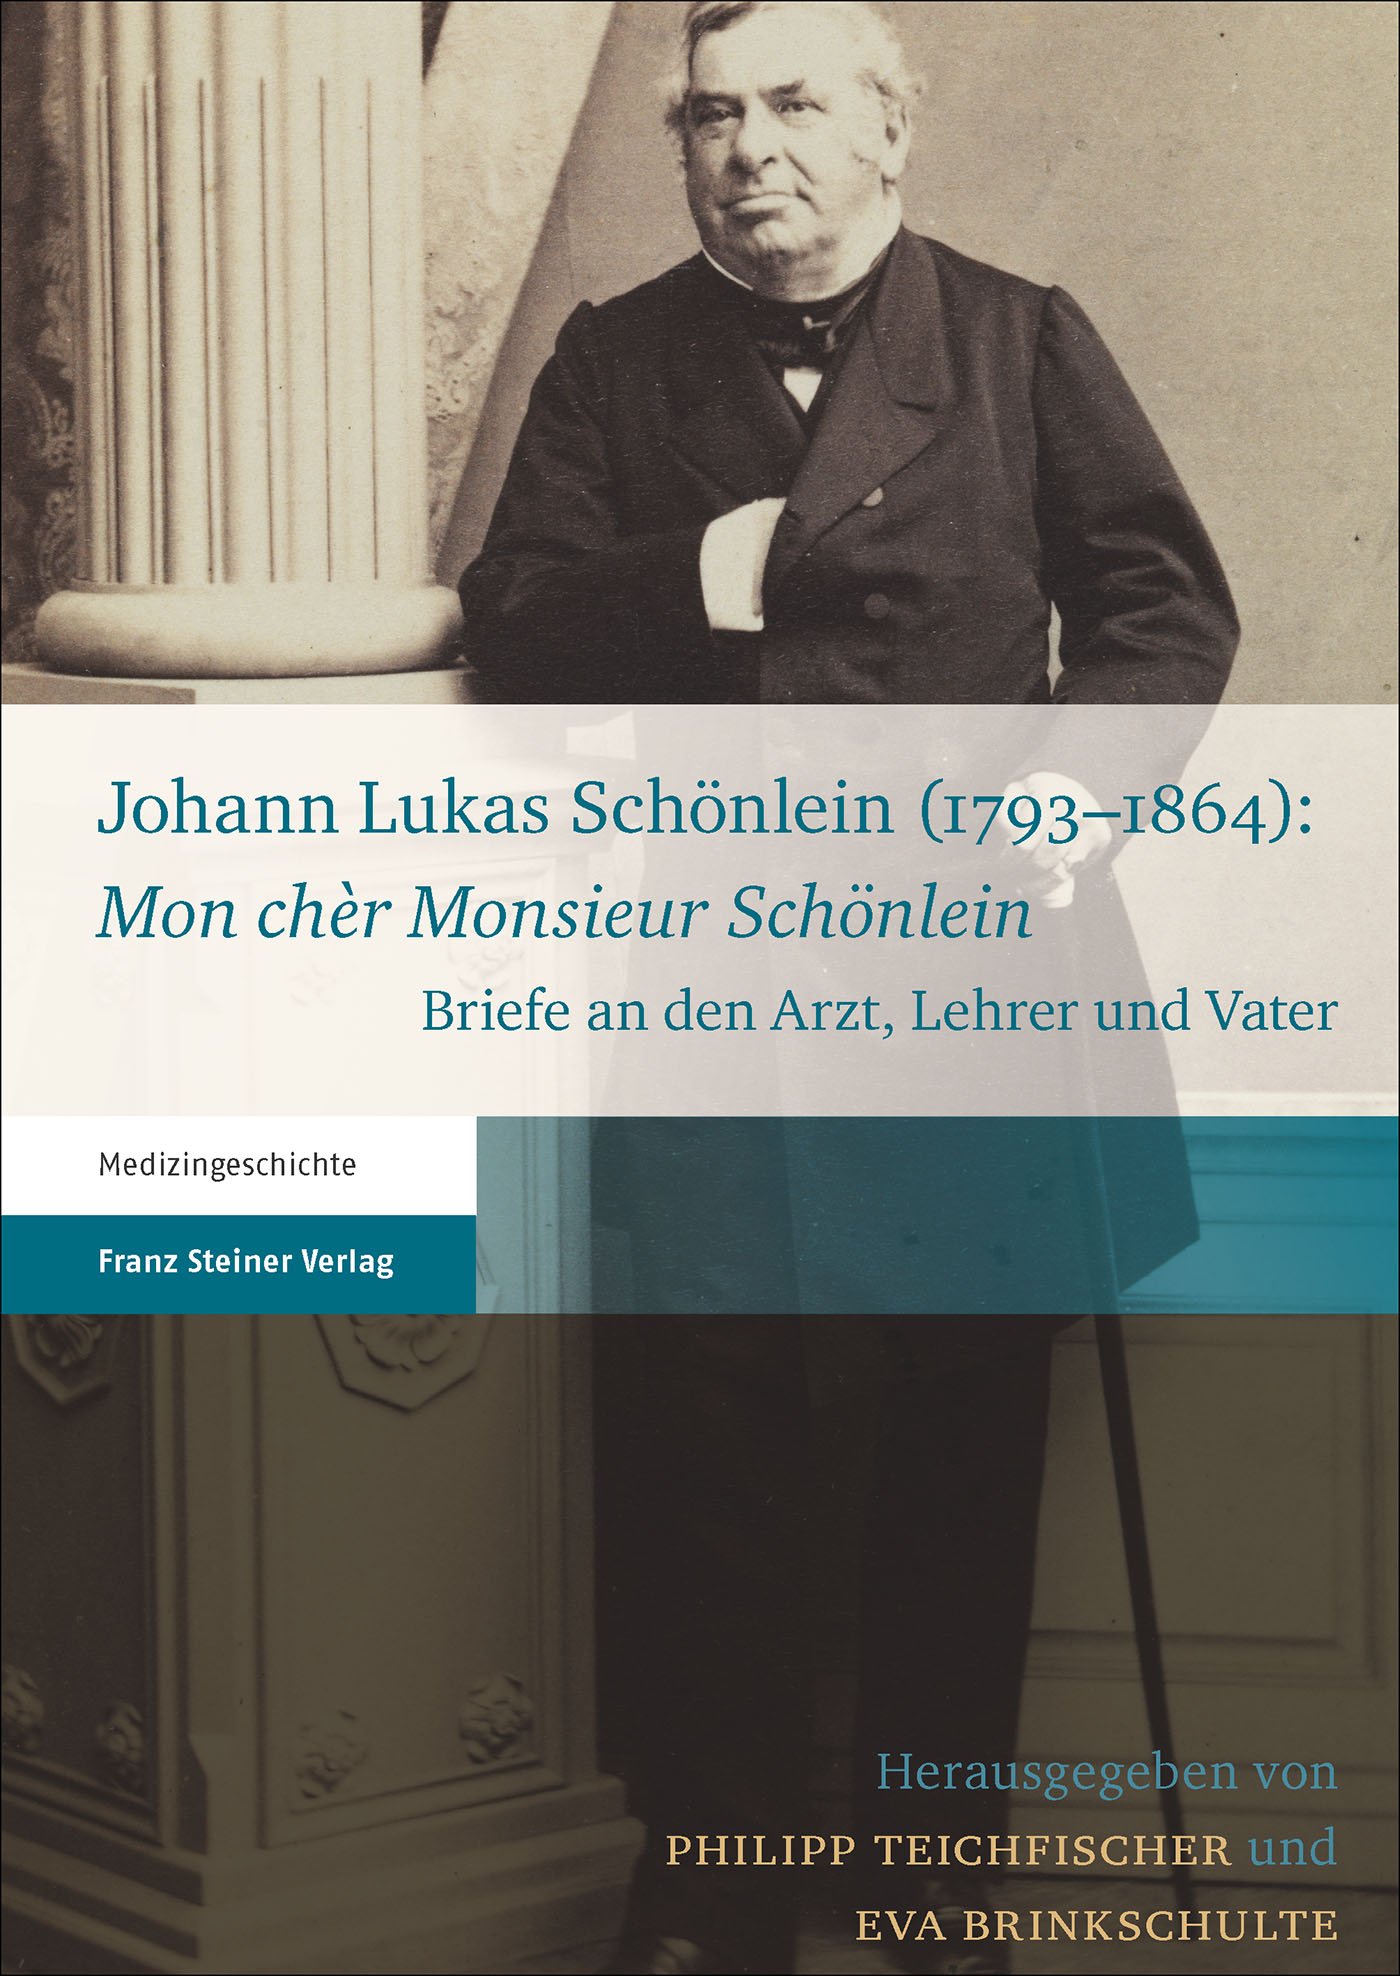 Johann Lukas Schönlein (1793–1864): "Mon chèr Monsieur Schönlein"